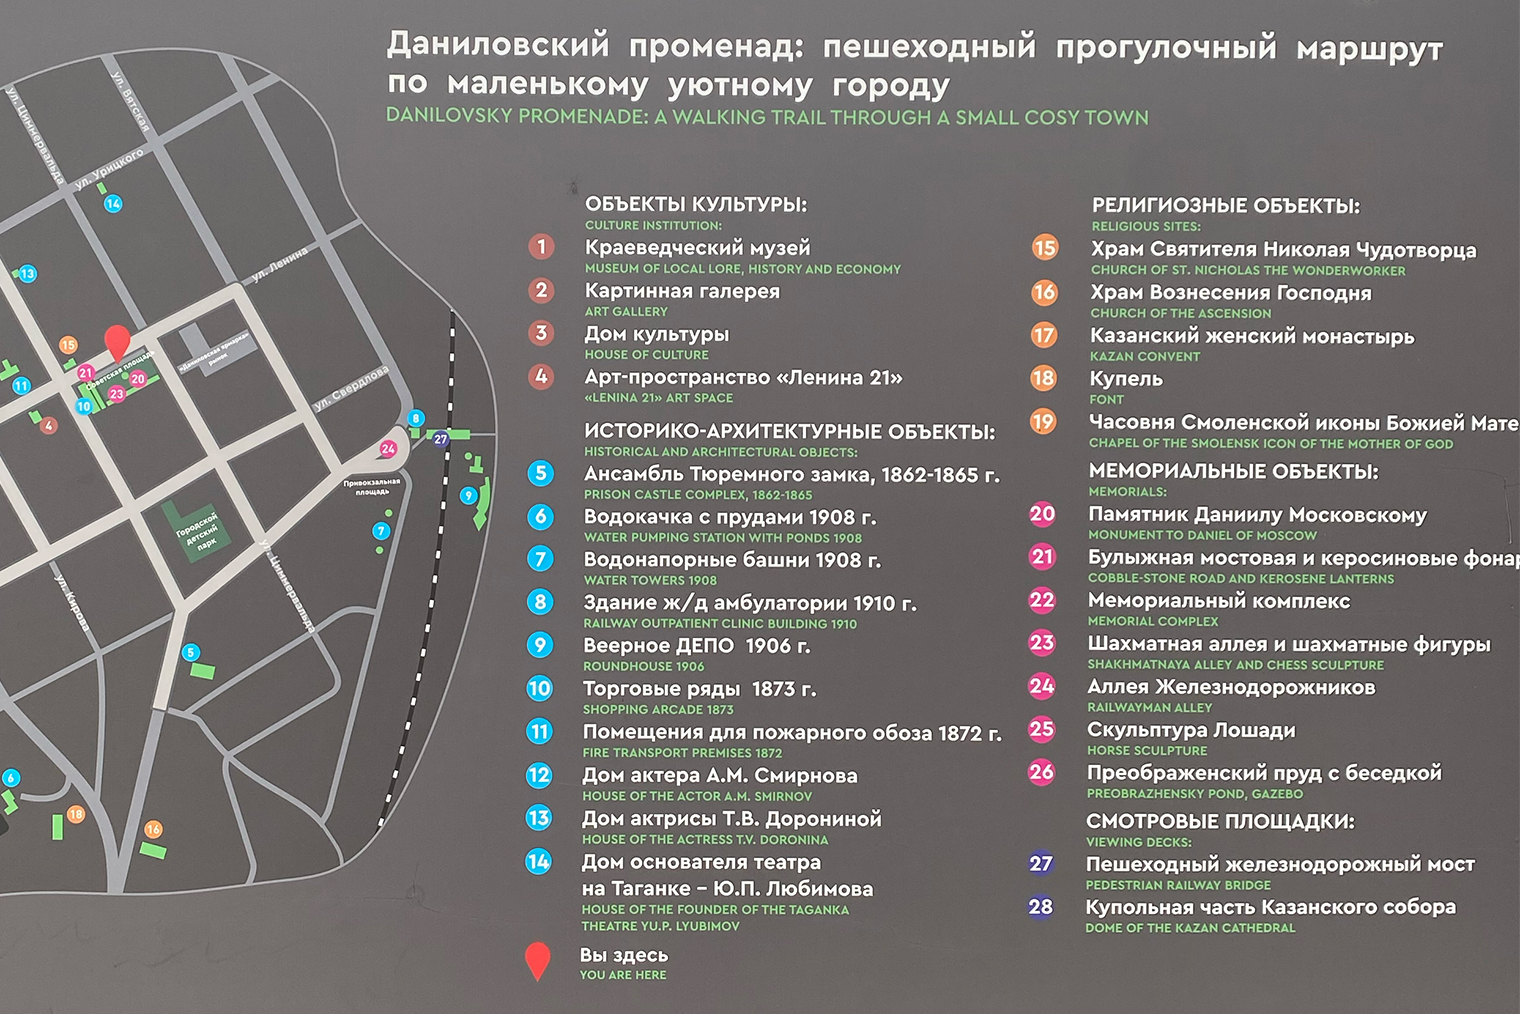 В Данилове есть карта интересных объектов — нас тоже туда включили, причем на четвертое место. Фотография: Дмитрий Андреев